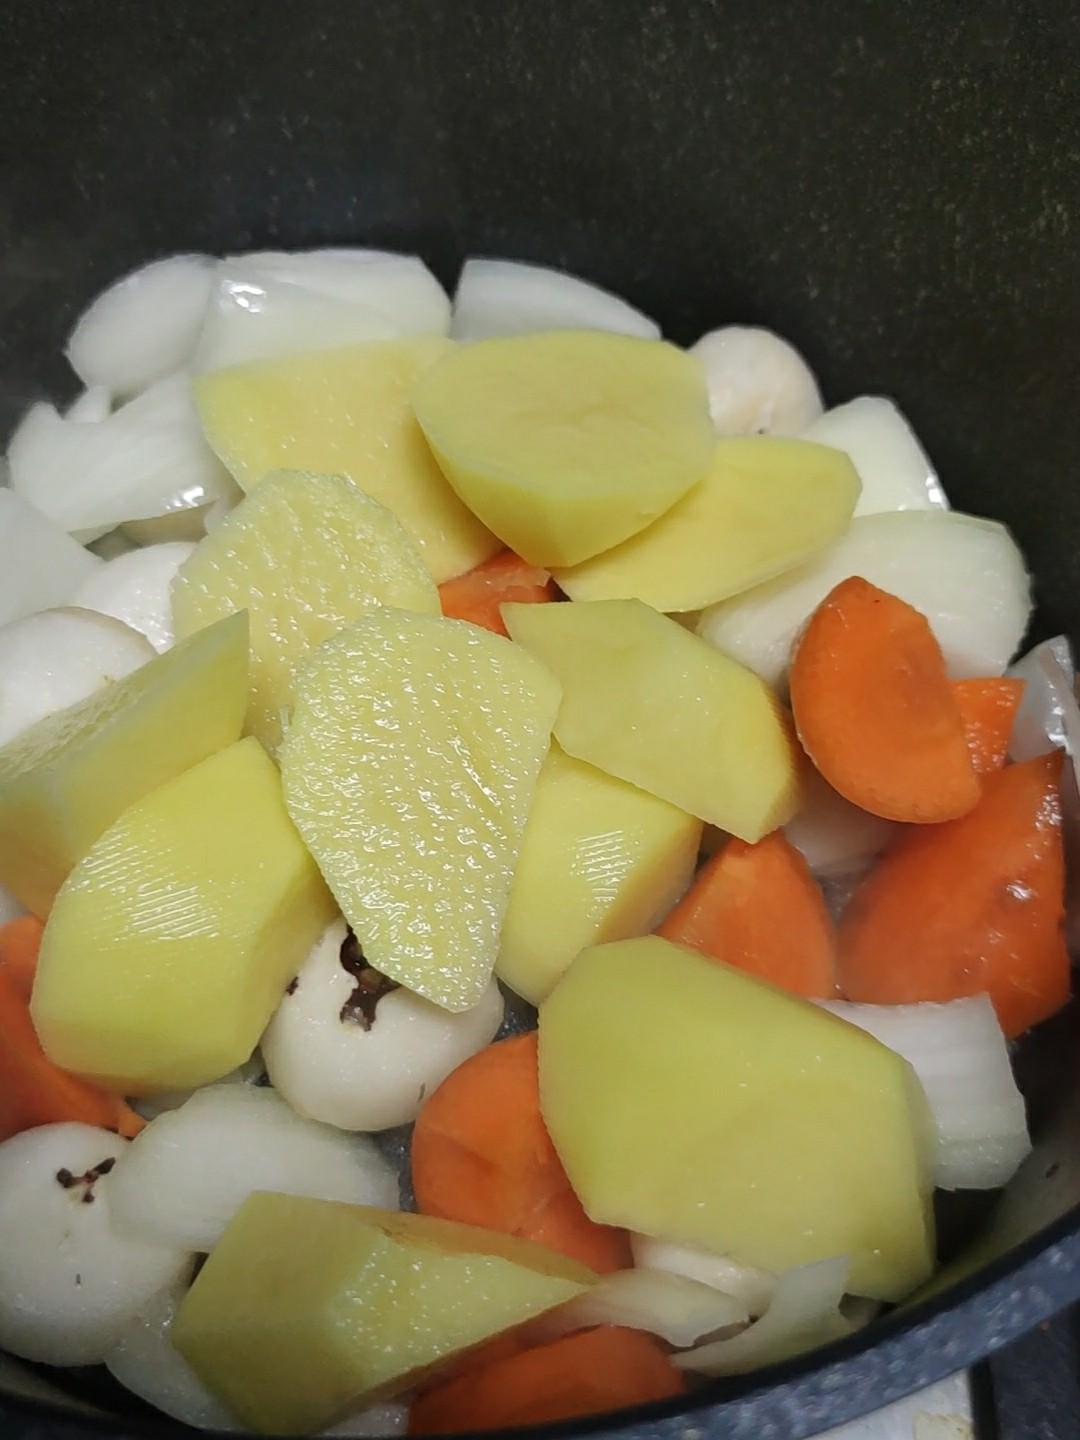 Curry Hot Pot recipe